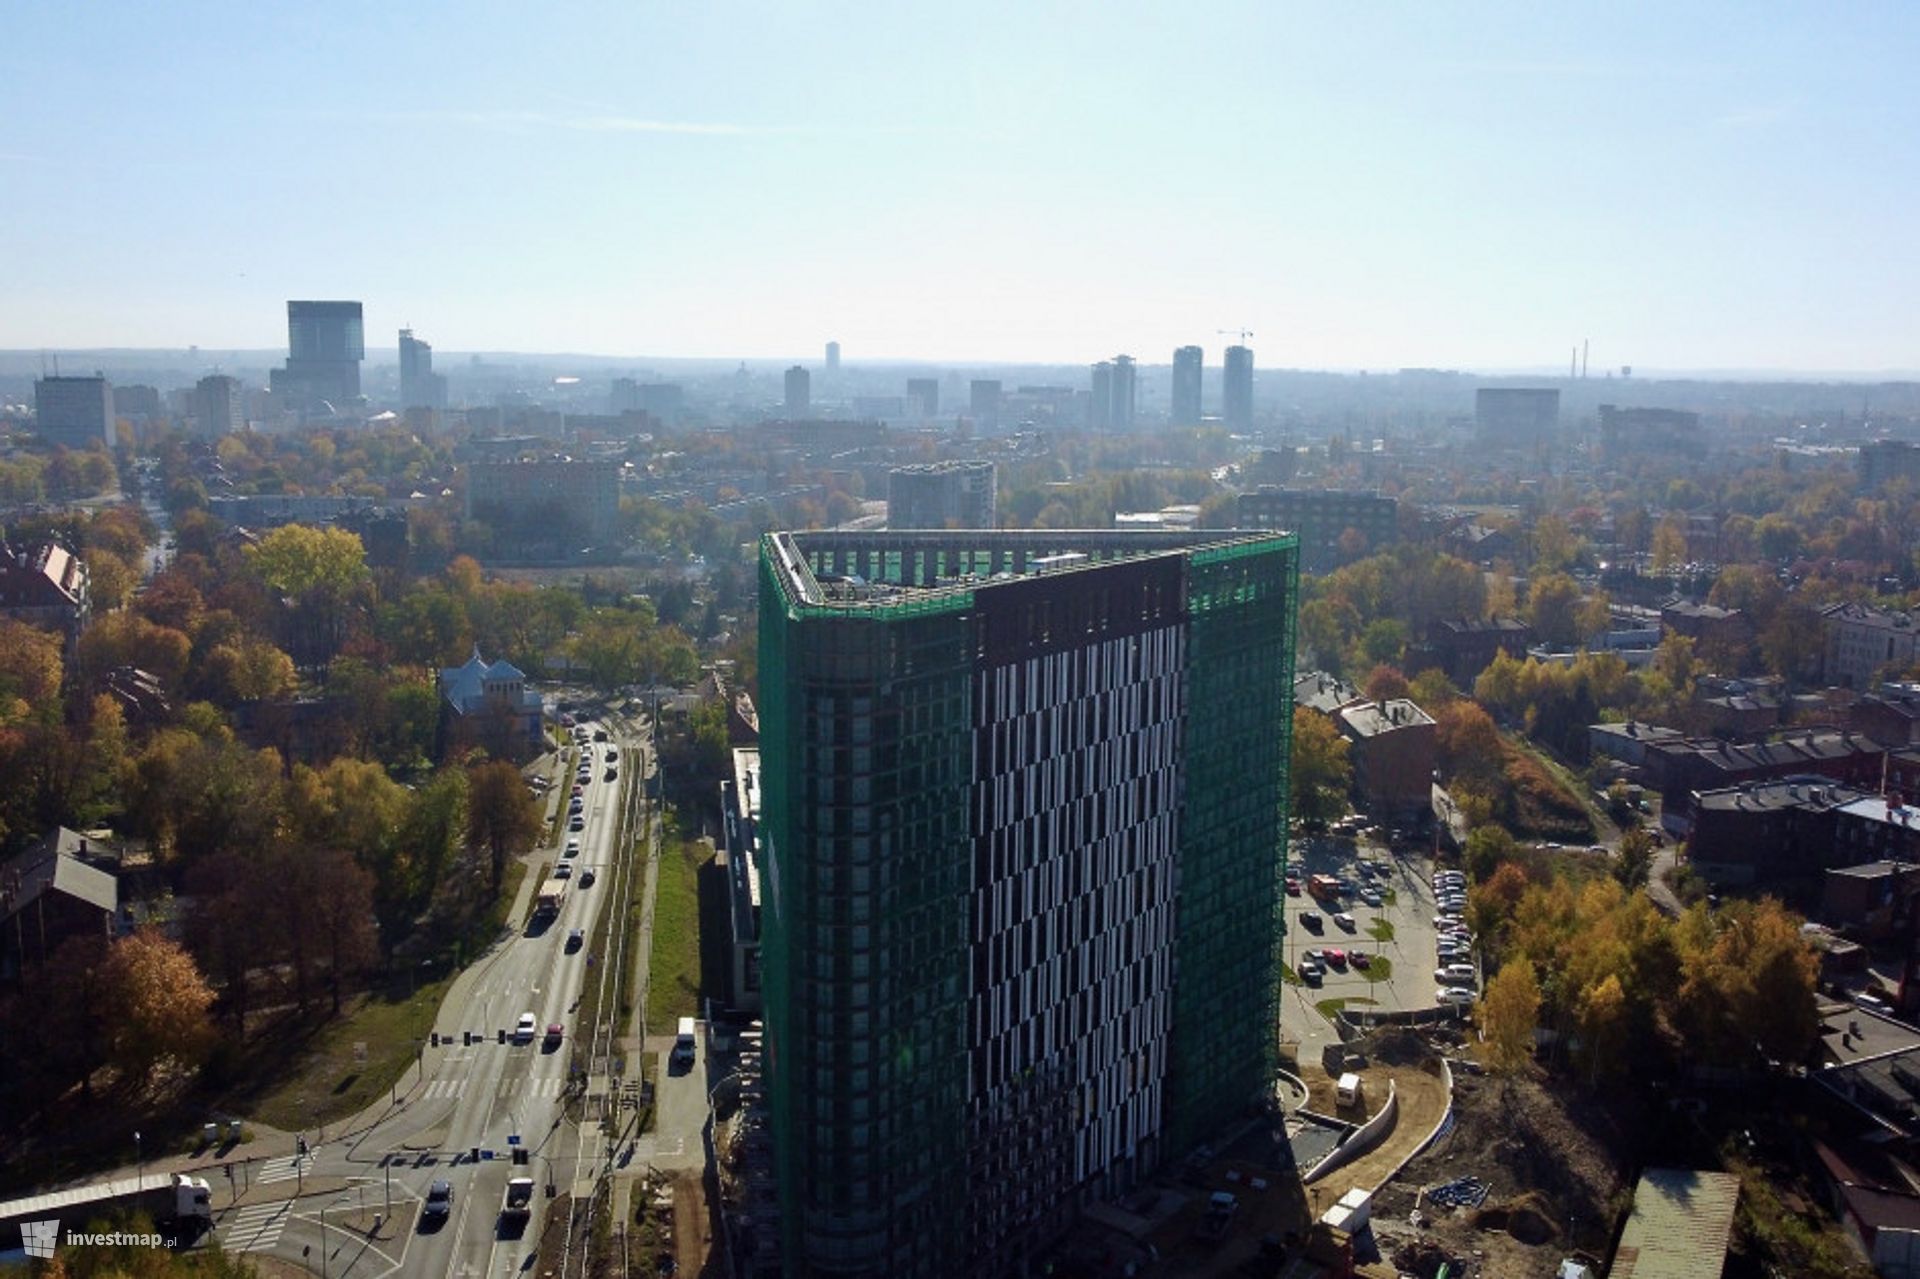 Firmy Advisa i ConAcc Partners wynajęły powierzchnię biurową w wieżowcu DL Tower w Katowicach